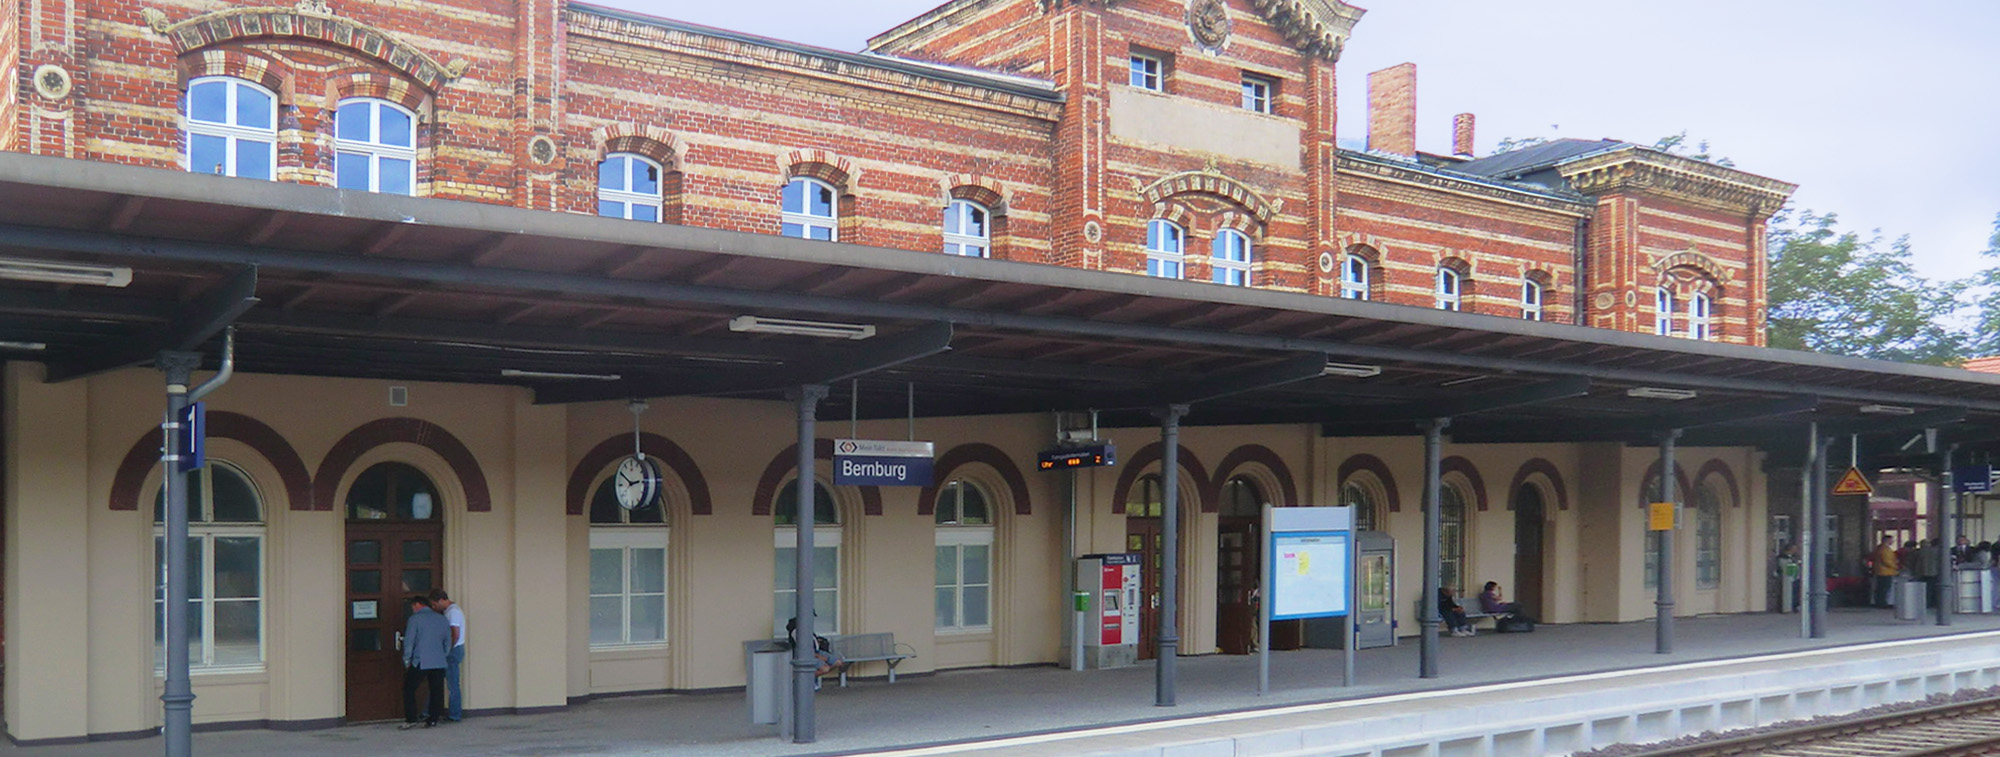 Rundum erneuert sind seit 2012 die Bahnsteige und das Empfangsgebäude in Bernburg (Saale)